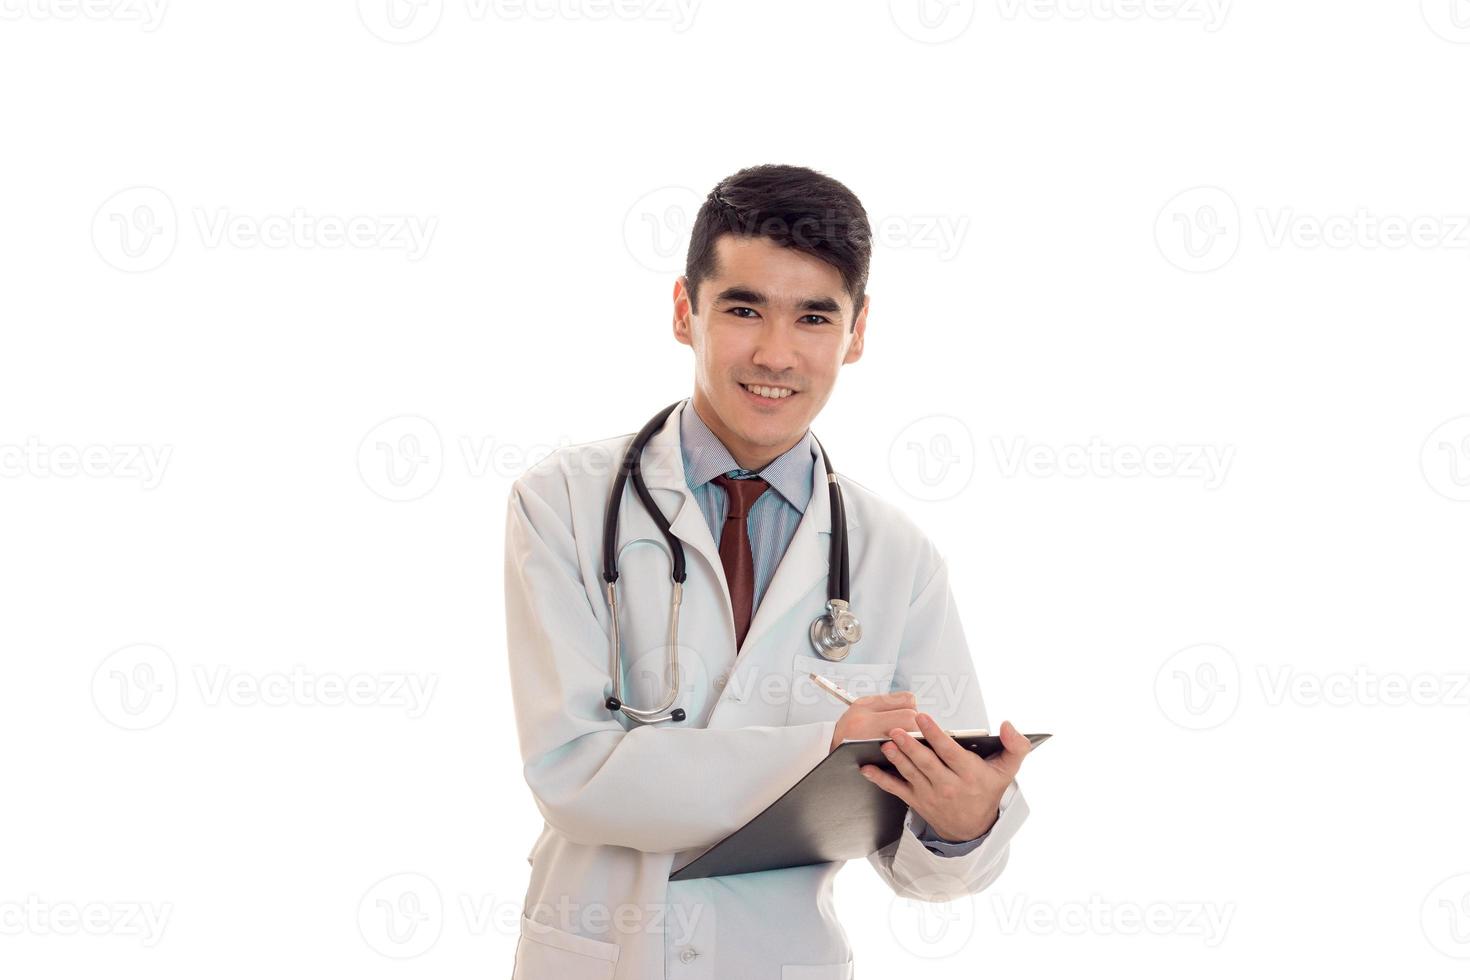 jovem médico alegre mantém um estetoscópio nos ombros e placa na mão isolado no fundo branco foto